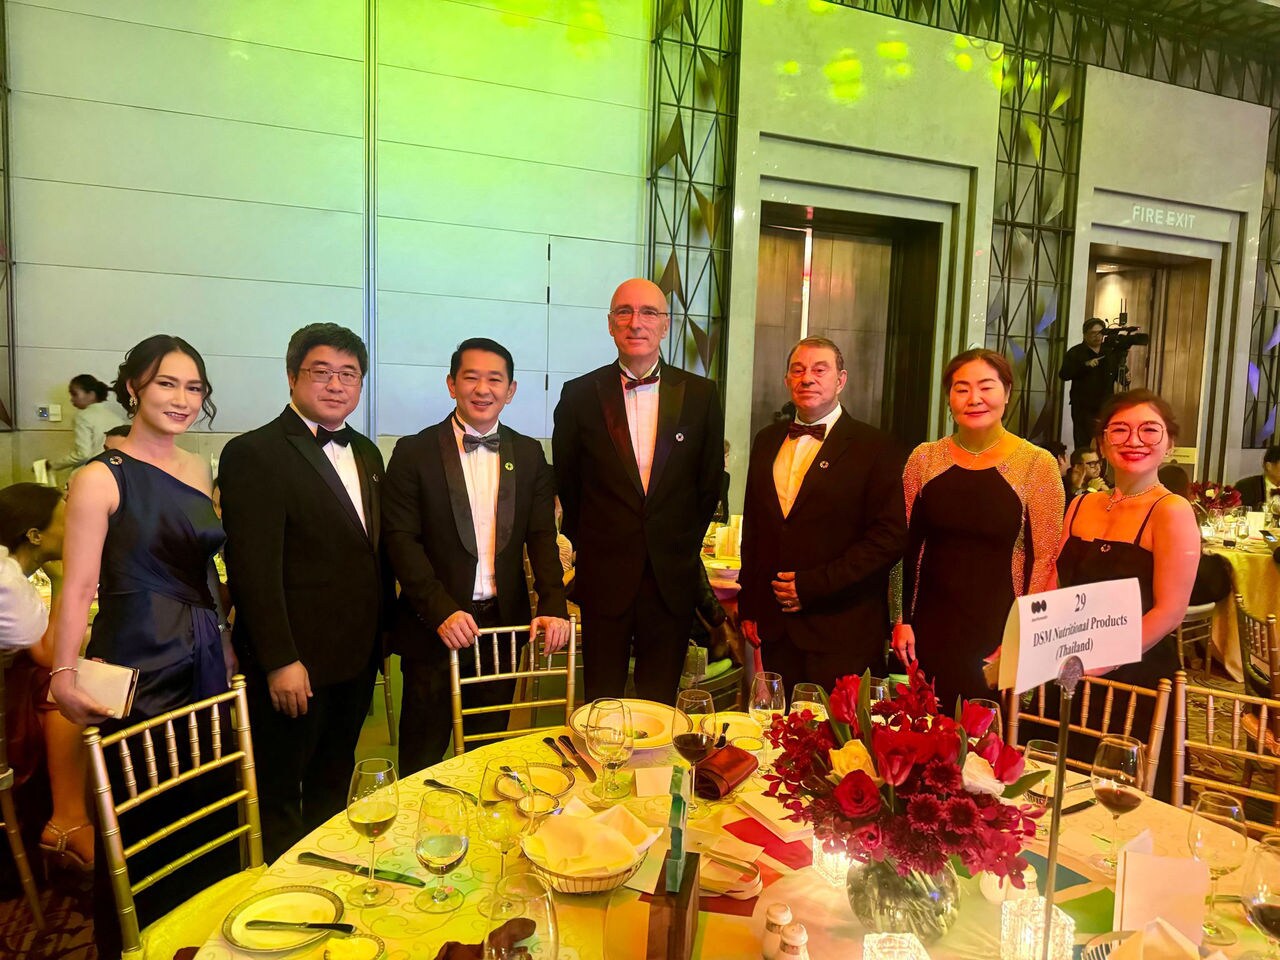 The dsm-firmenich team with the Dutch Ambassador to Thailand H.E. Mr. Remco van Wijngaarden